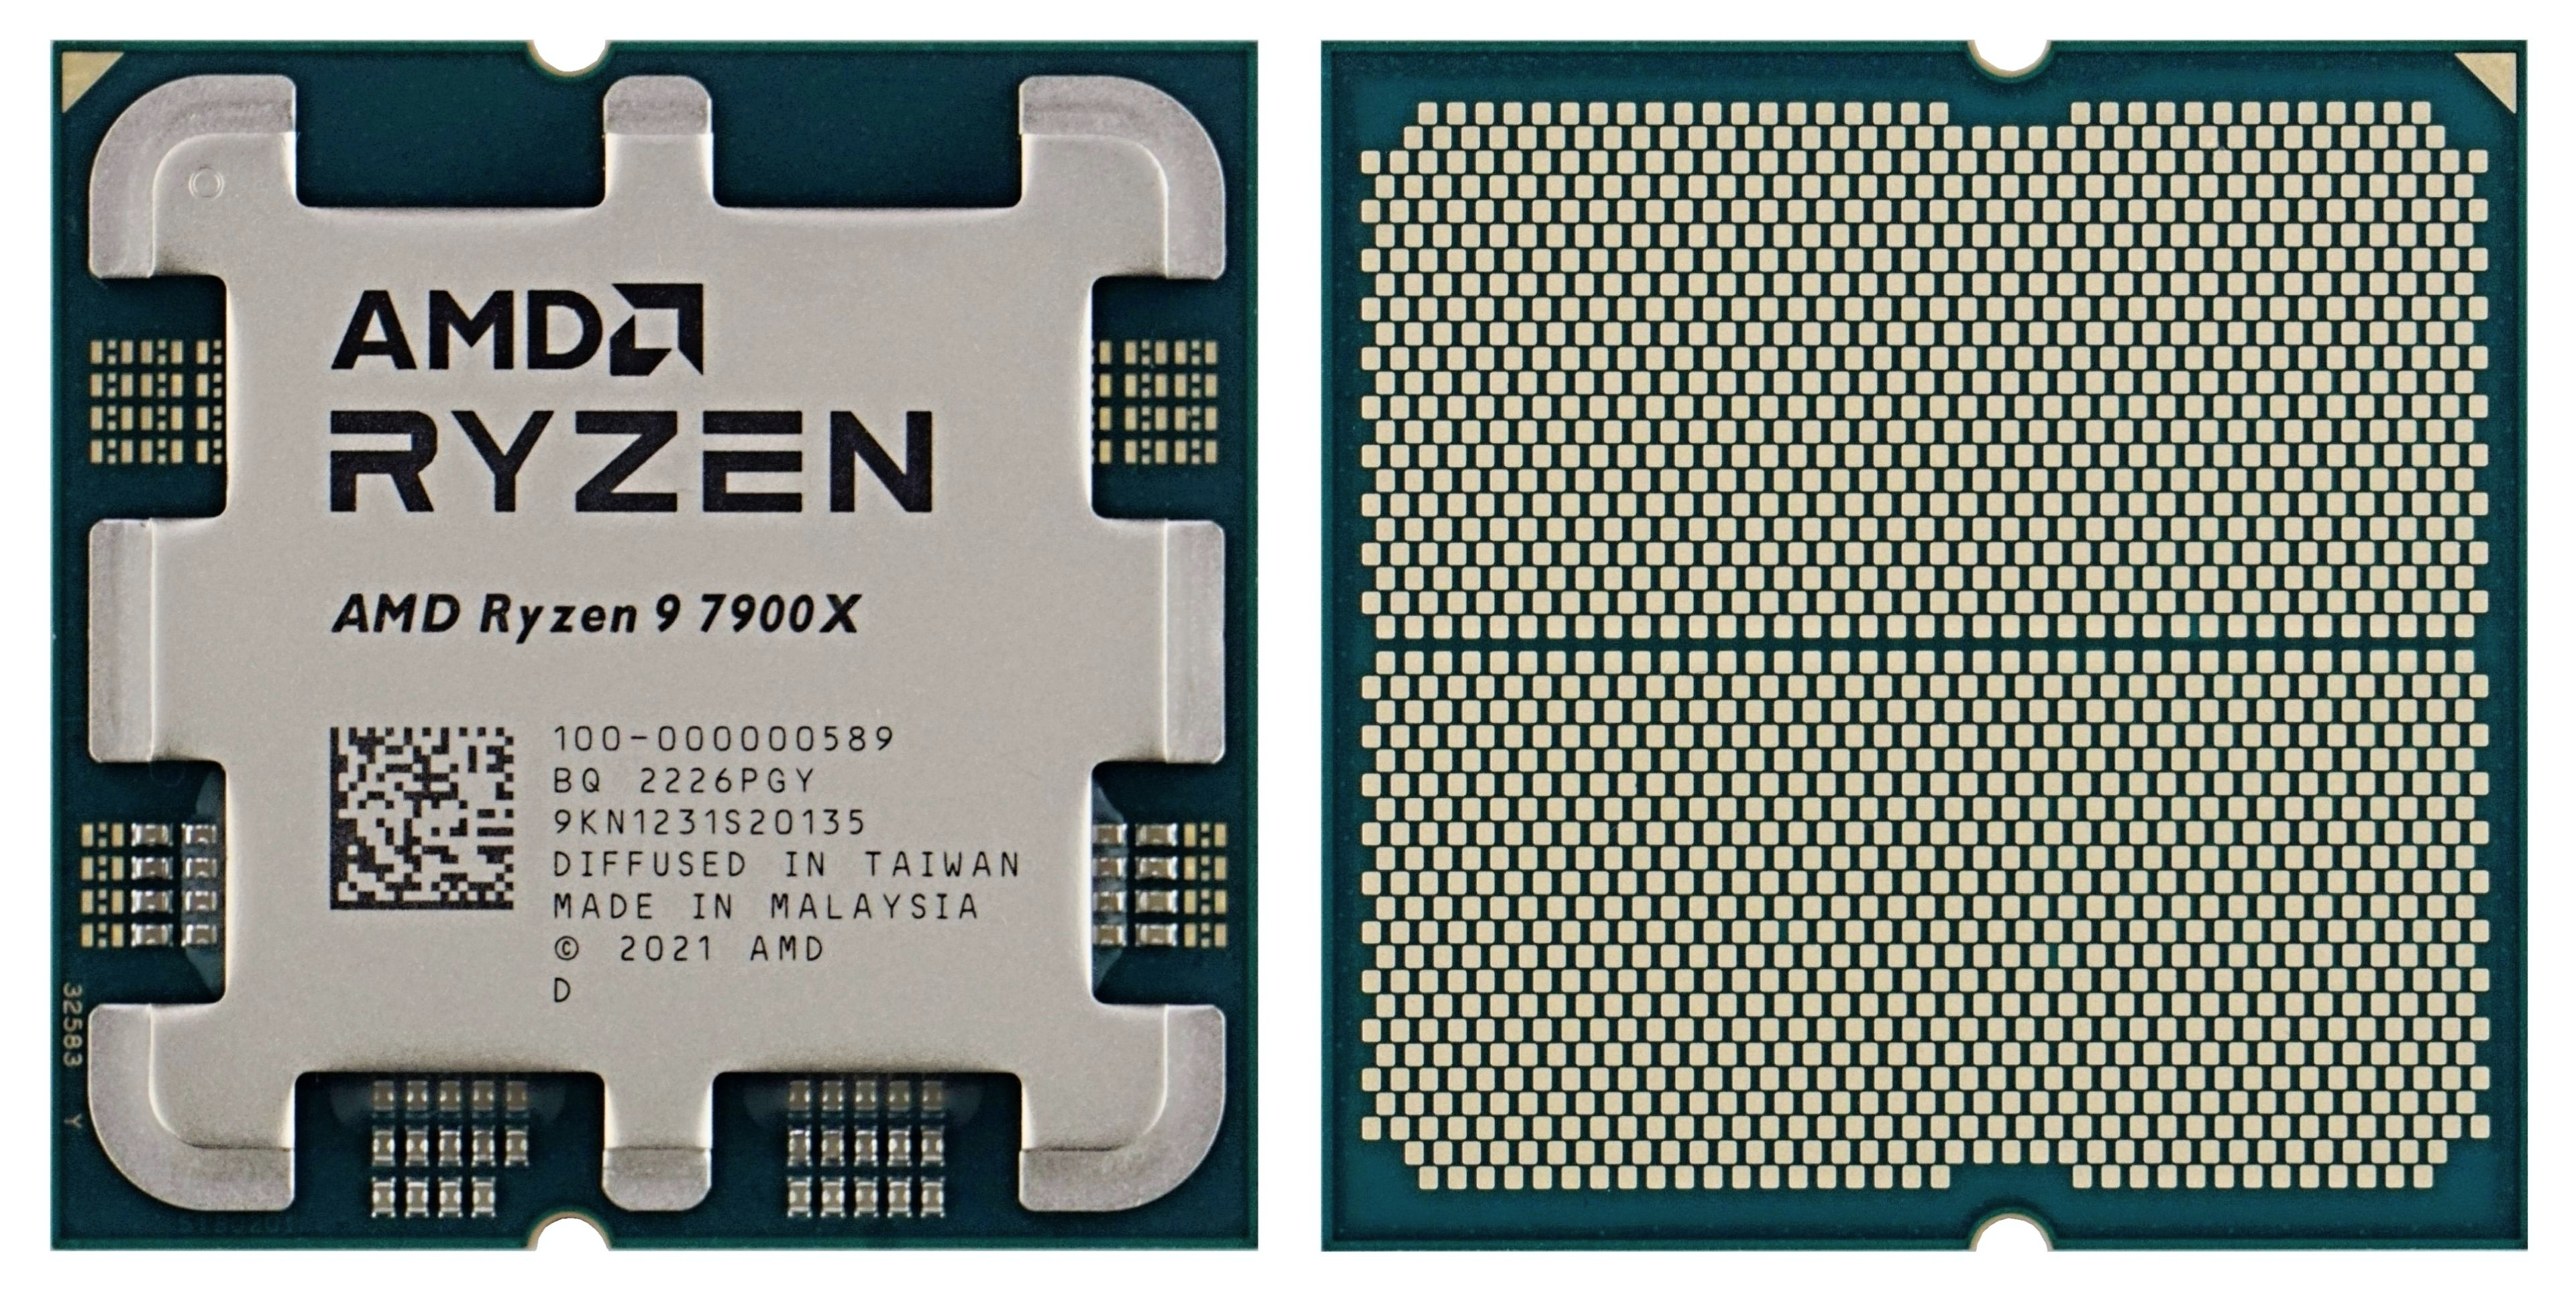 Why Choose AMD Ryzen 9 7900X Processor?